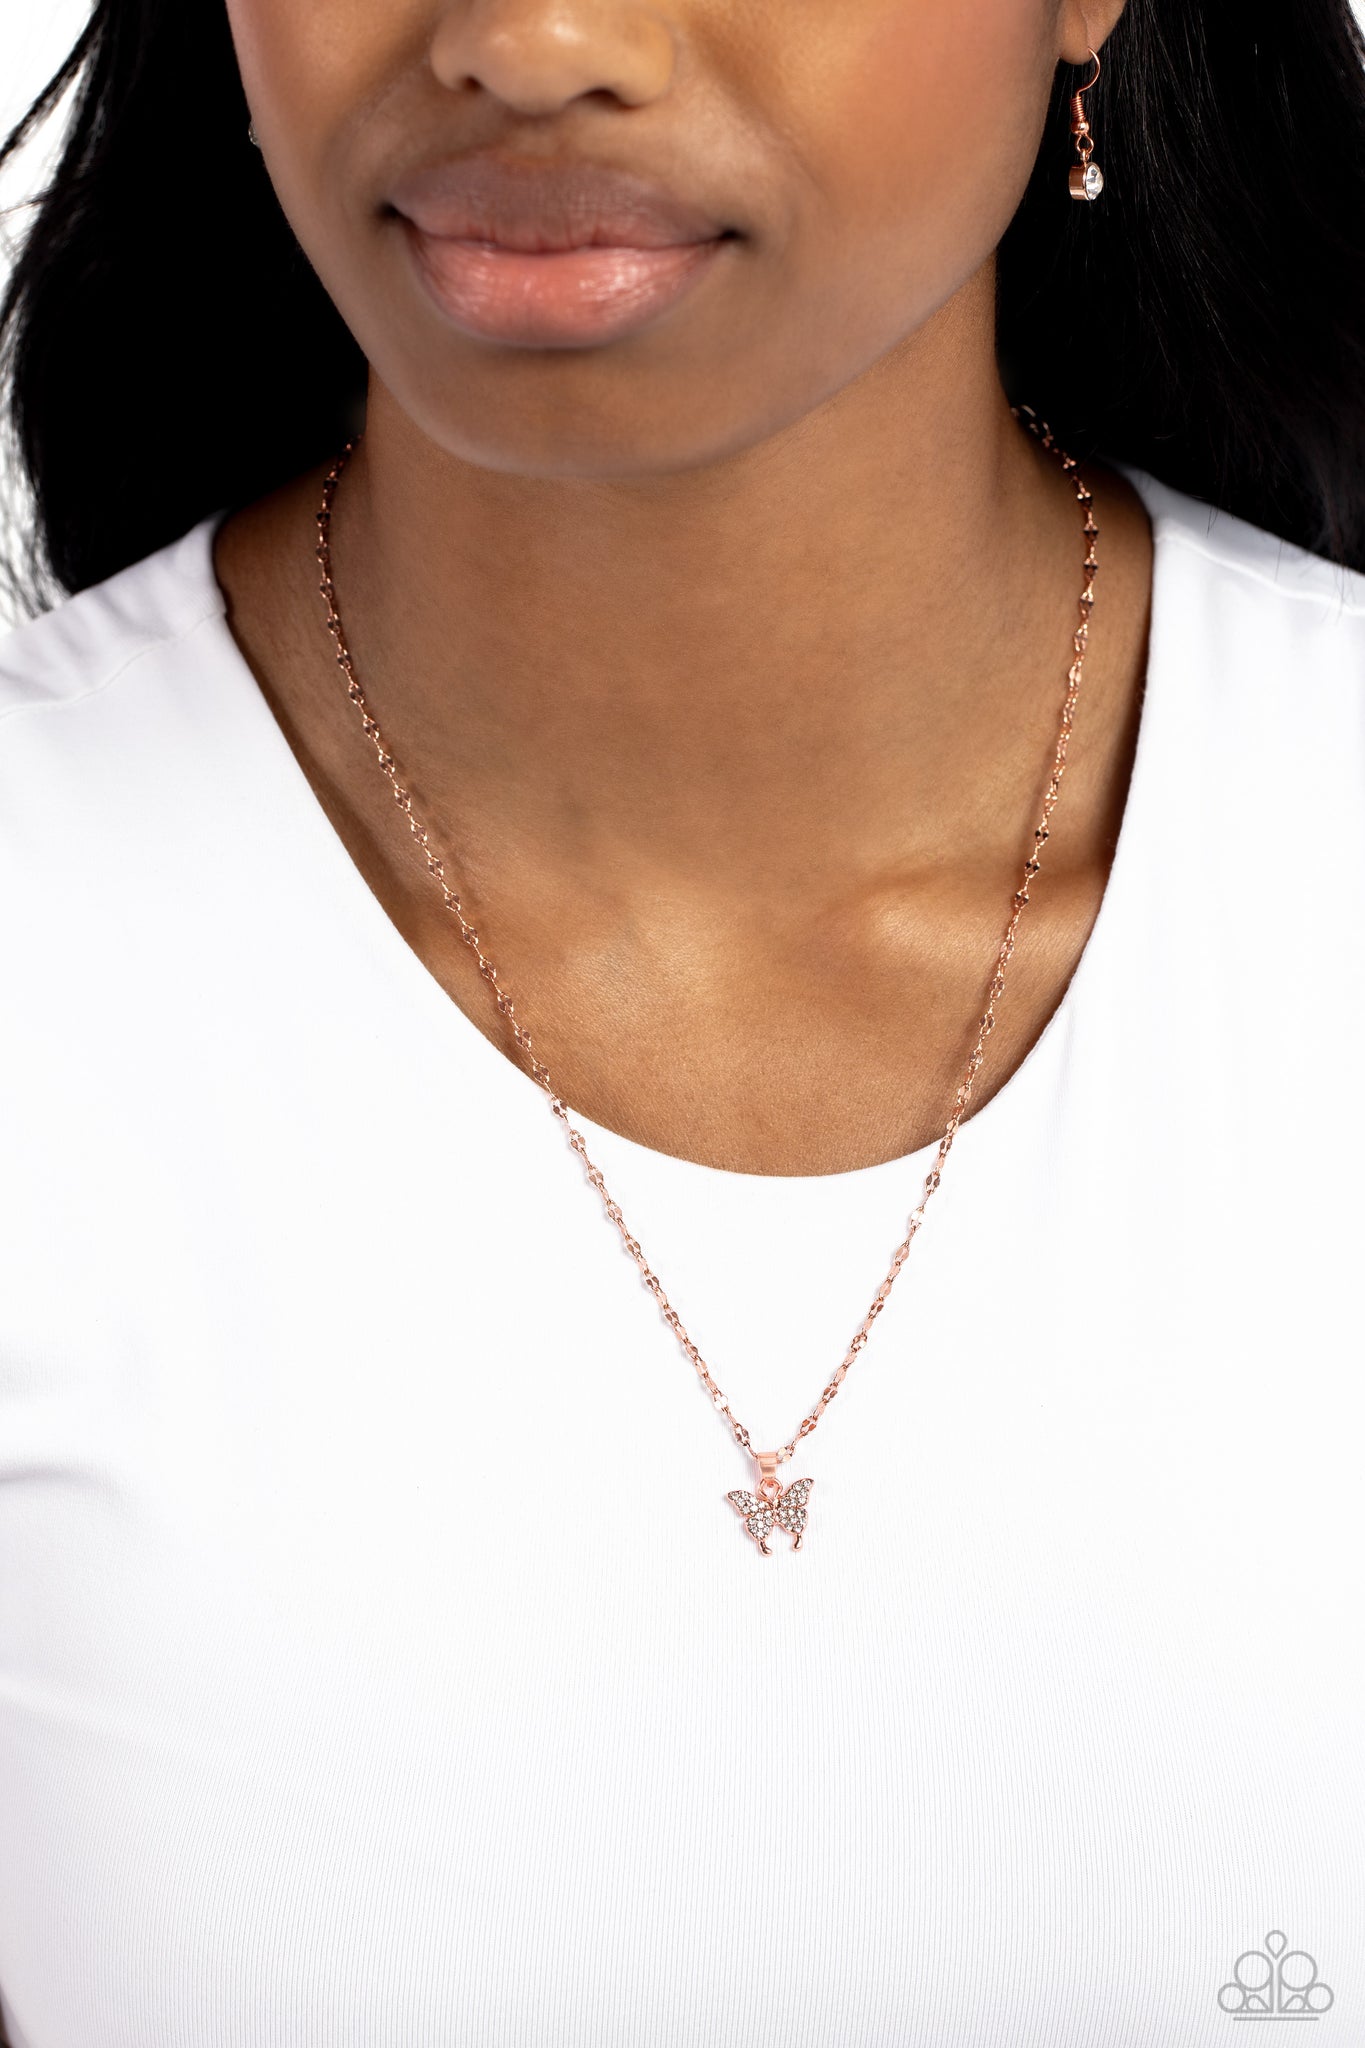 Divine Iridescence Copper Necklace - Jewelry by Bretta